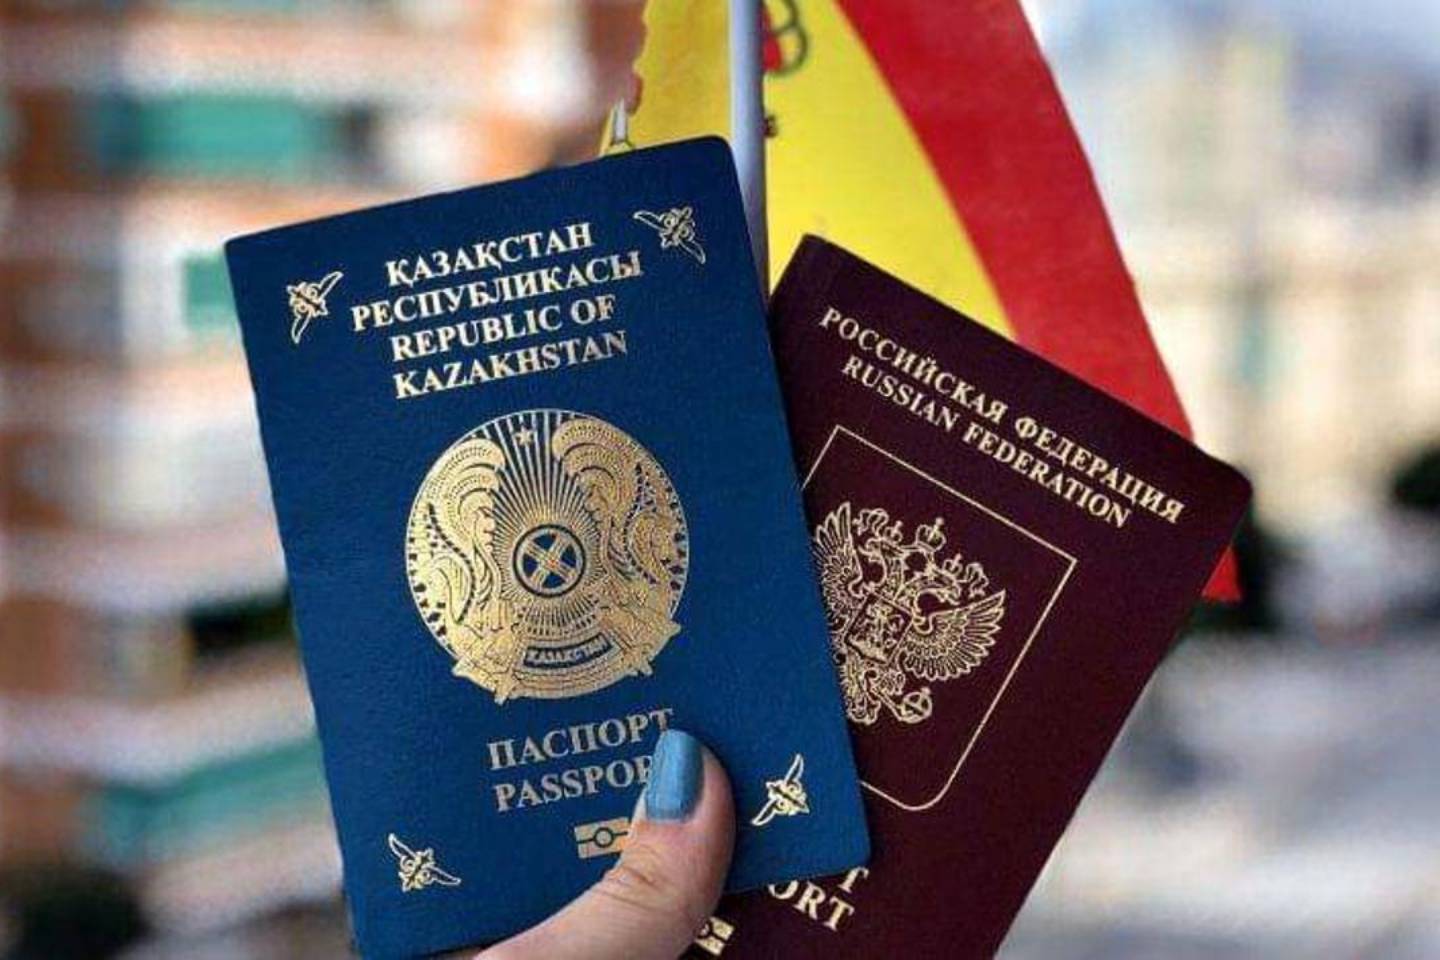 Происшествия в Казахстане и мире / Криминальные новости / Каждой по штрафу: три женщины были наказаны за двойное гражданство